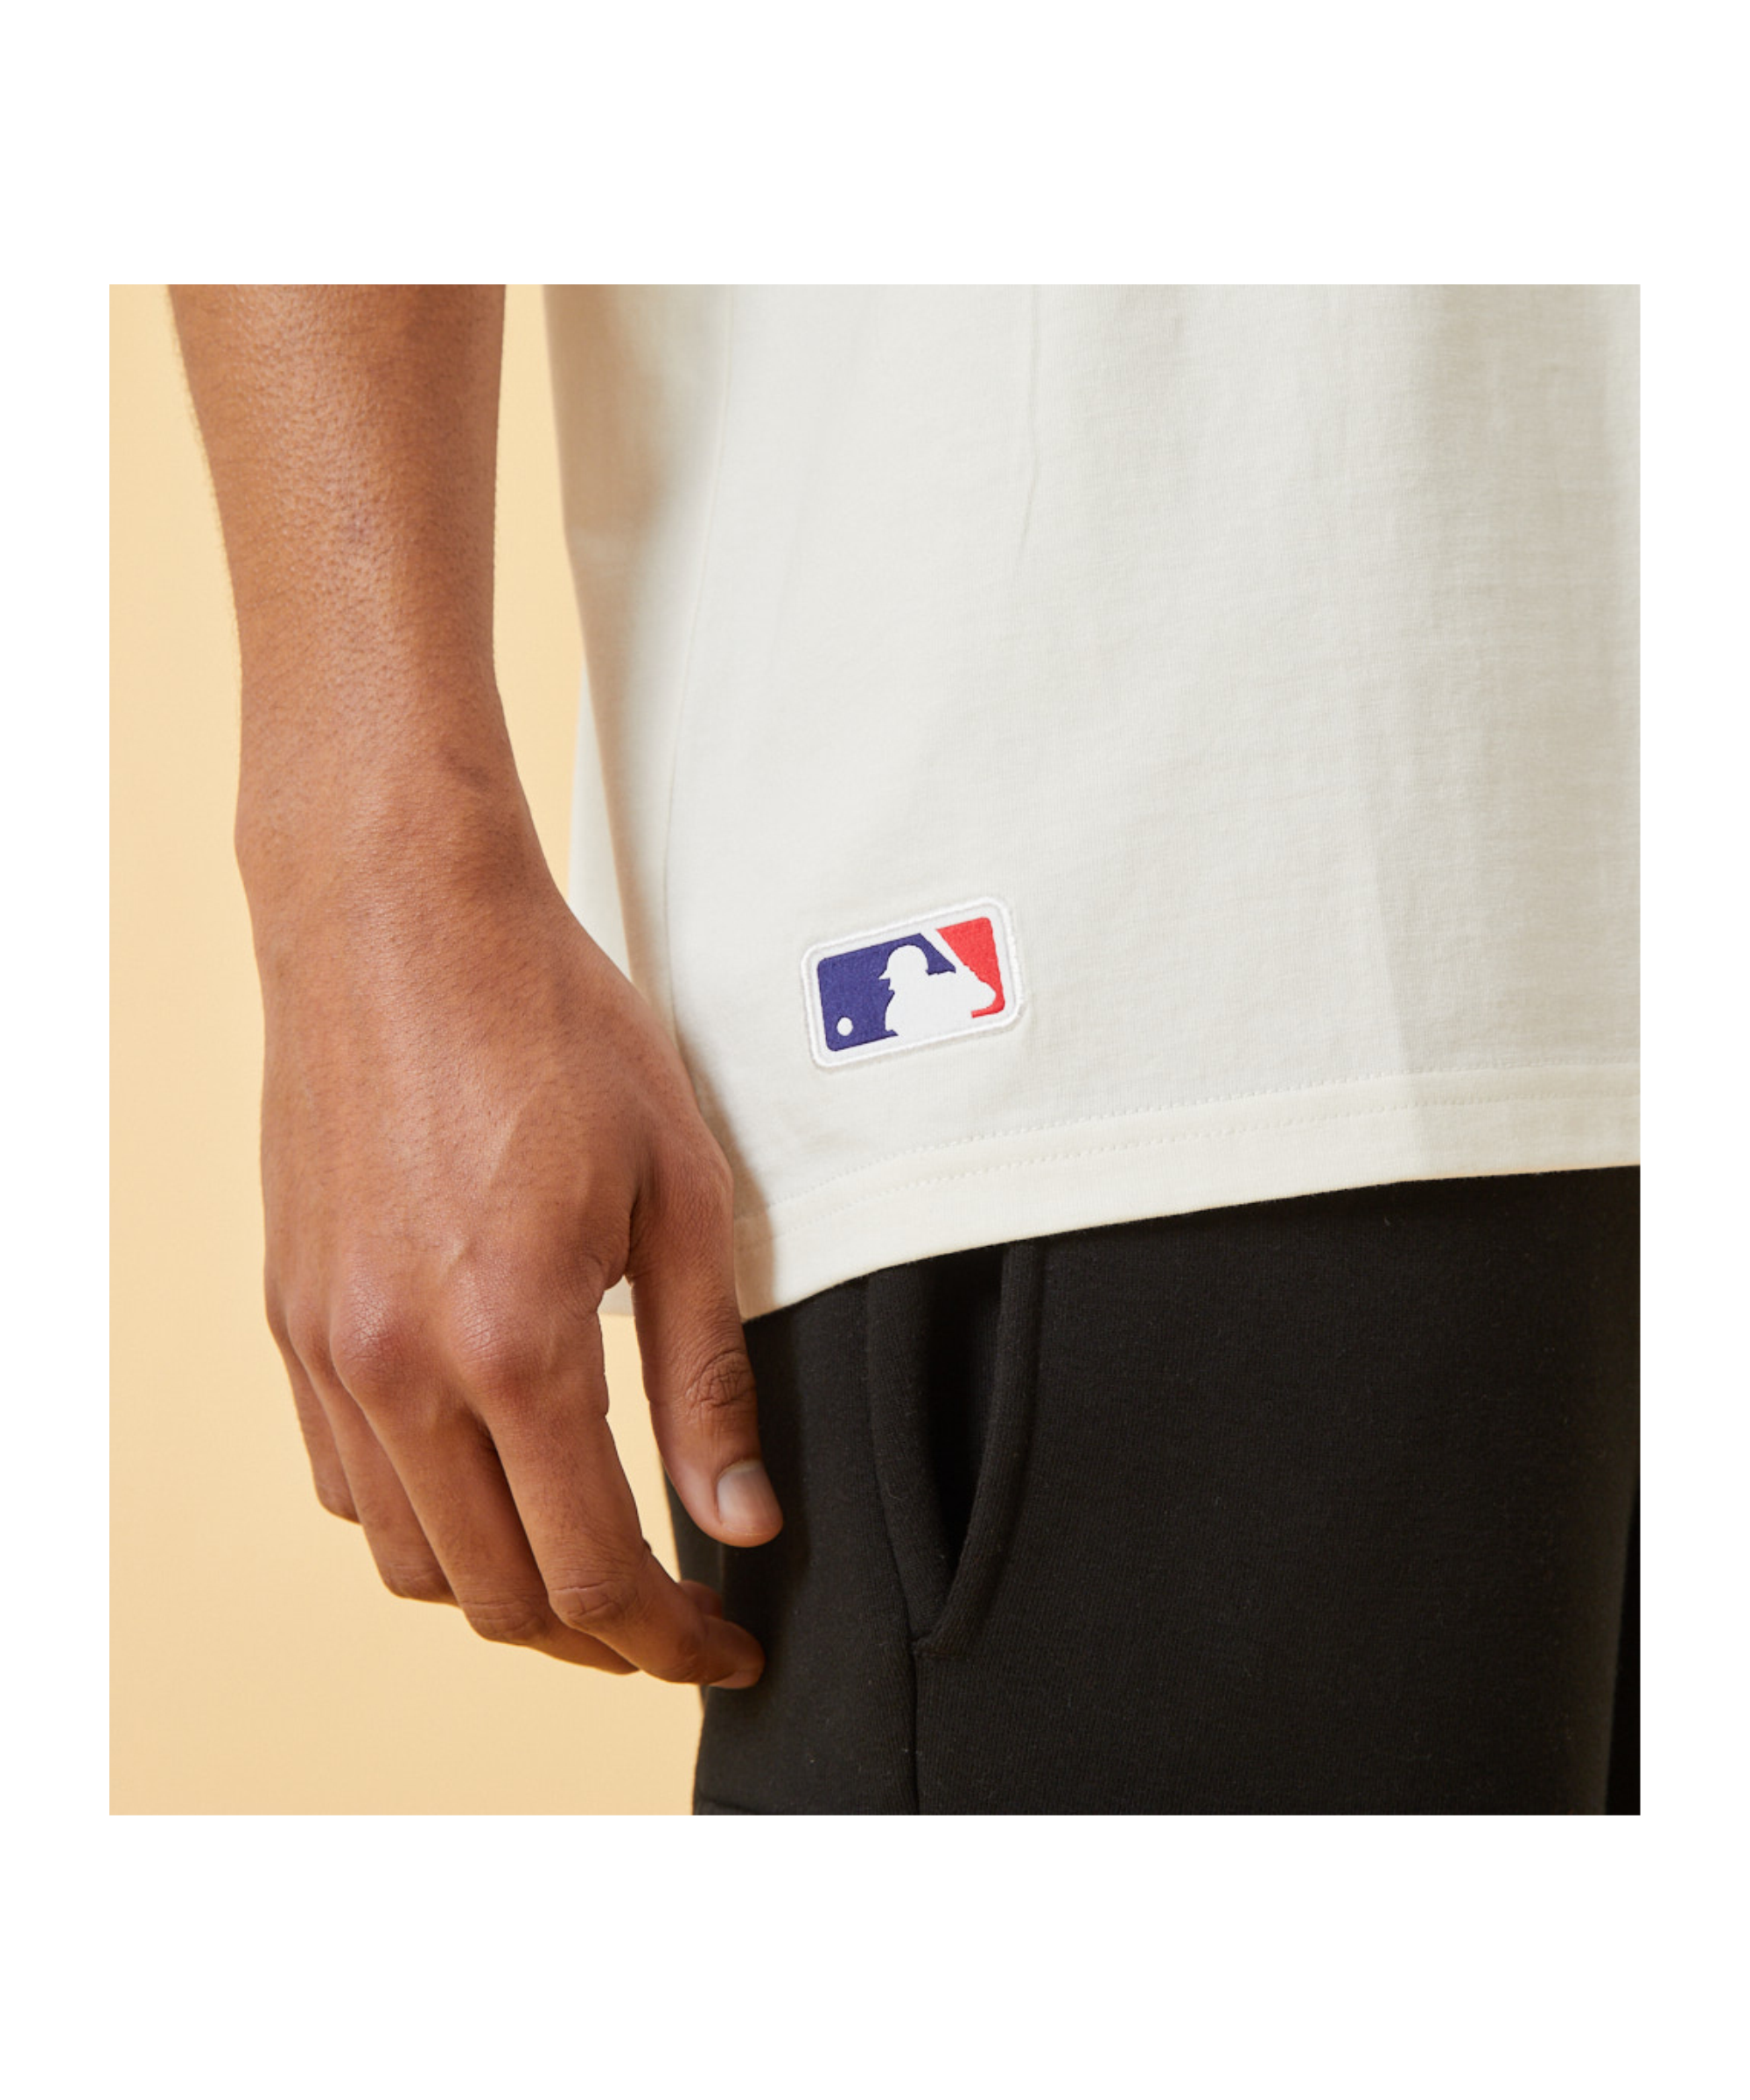 New Era NY Yankees Oversized Big Logo T-Shirt FSFP - Black